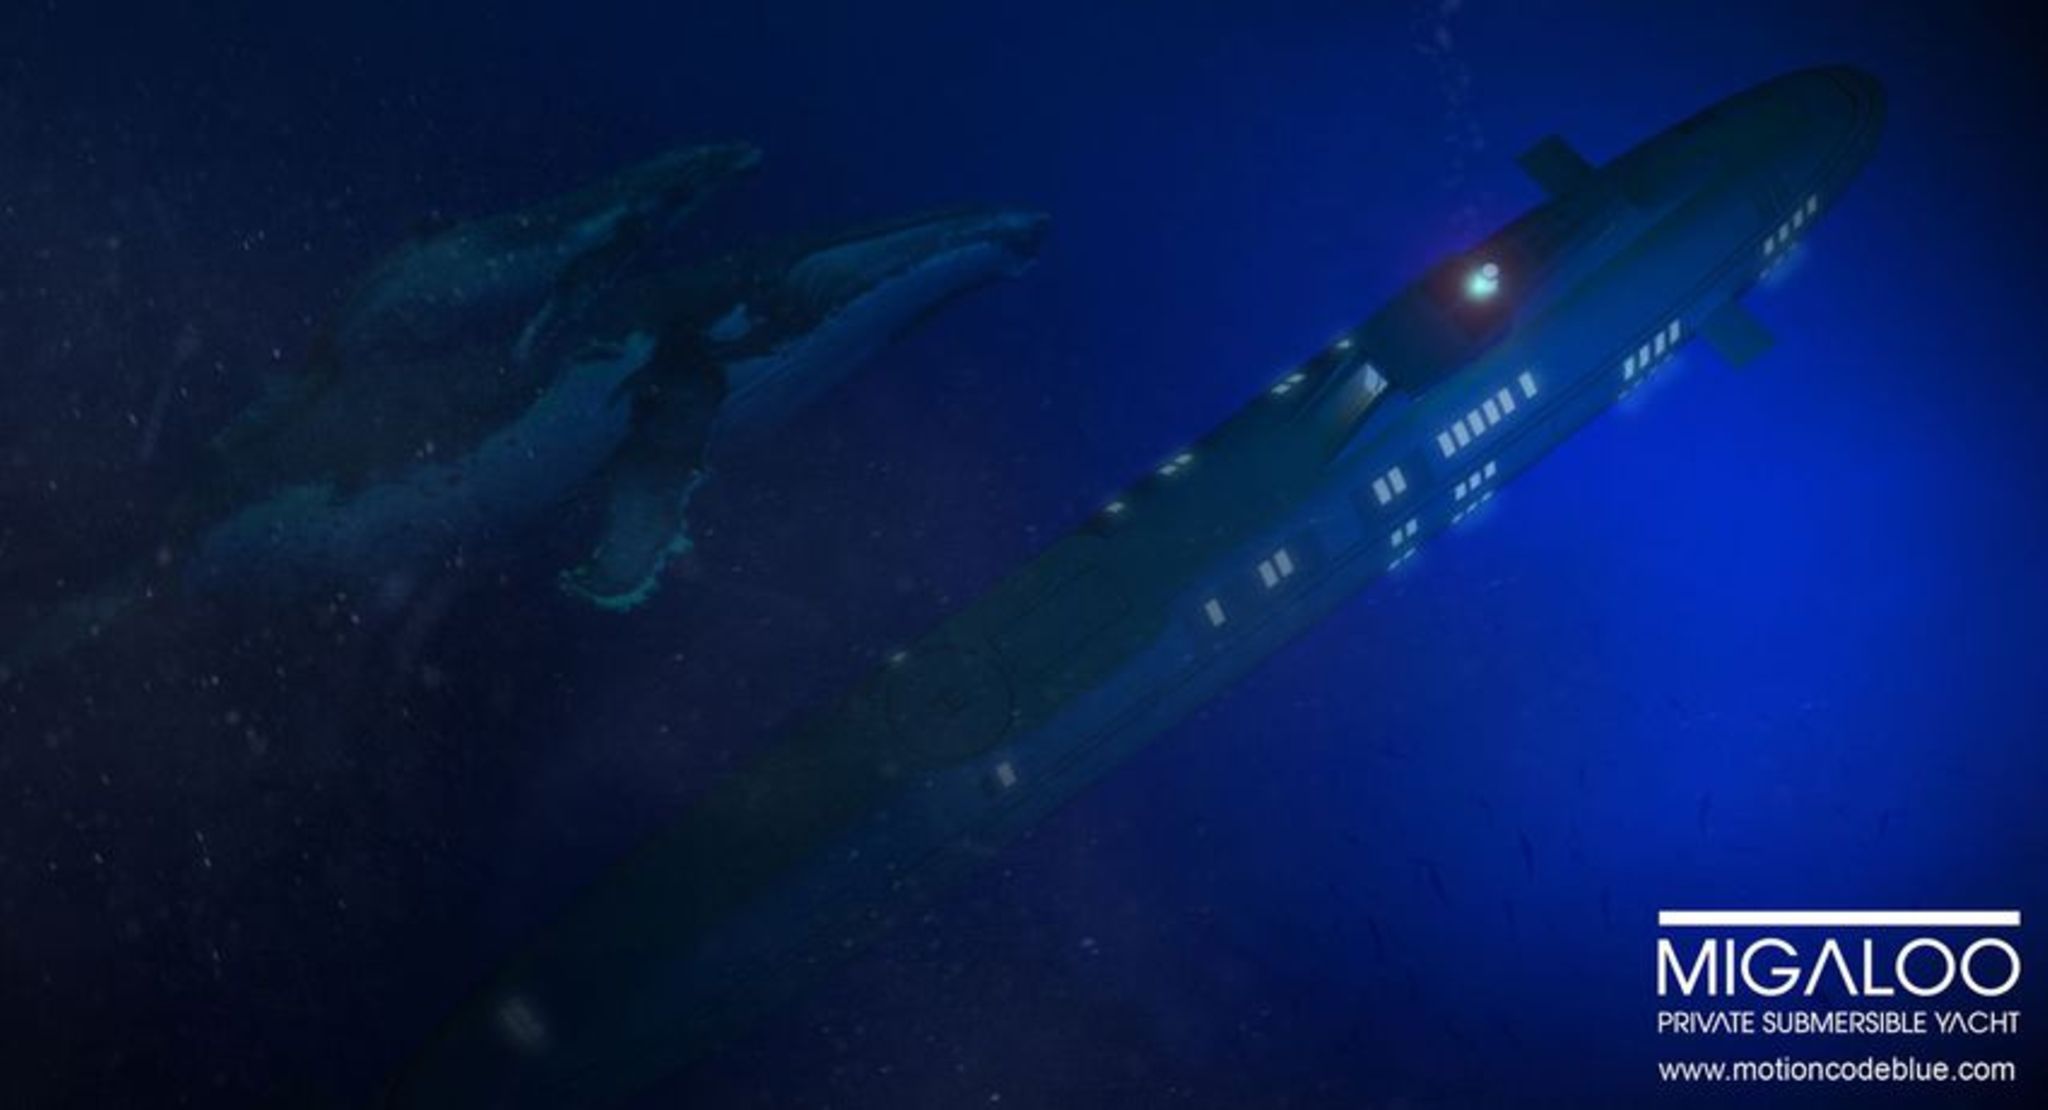 Milliarden-Idee: Das erste Luxus-U-Boot für Superreiche - WELT